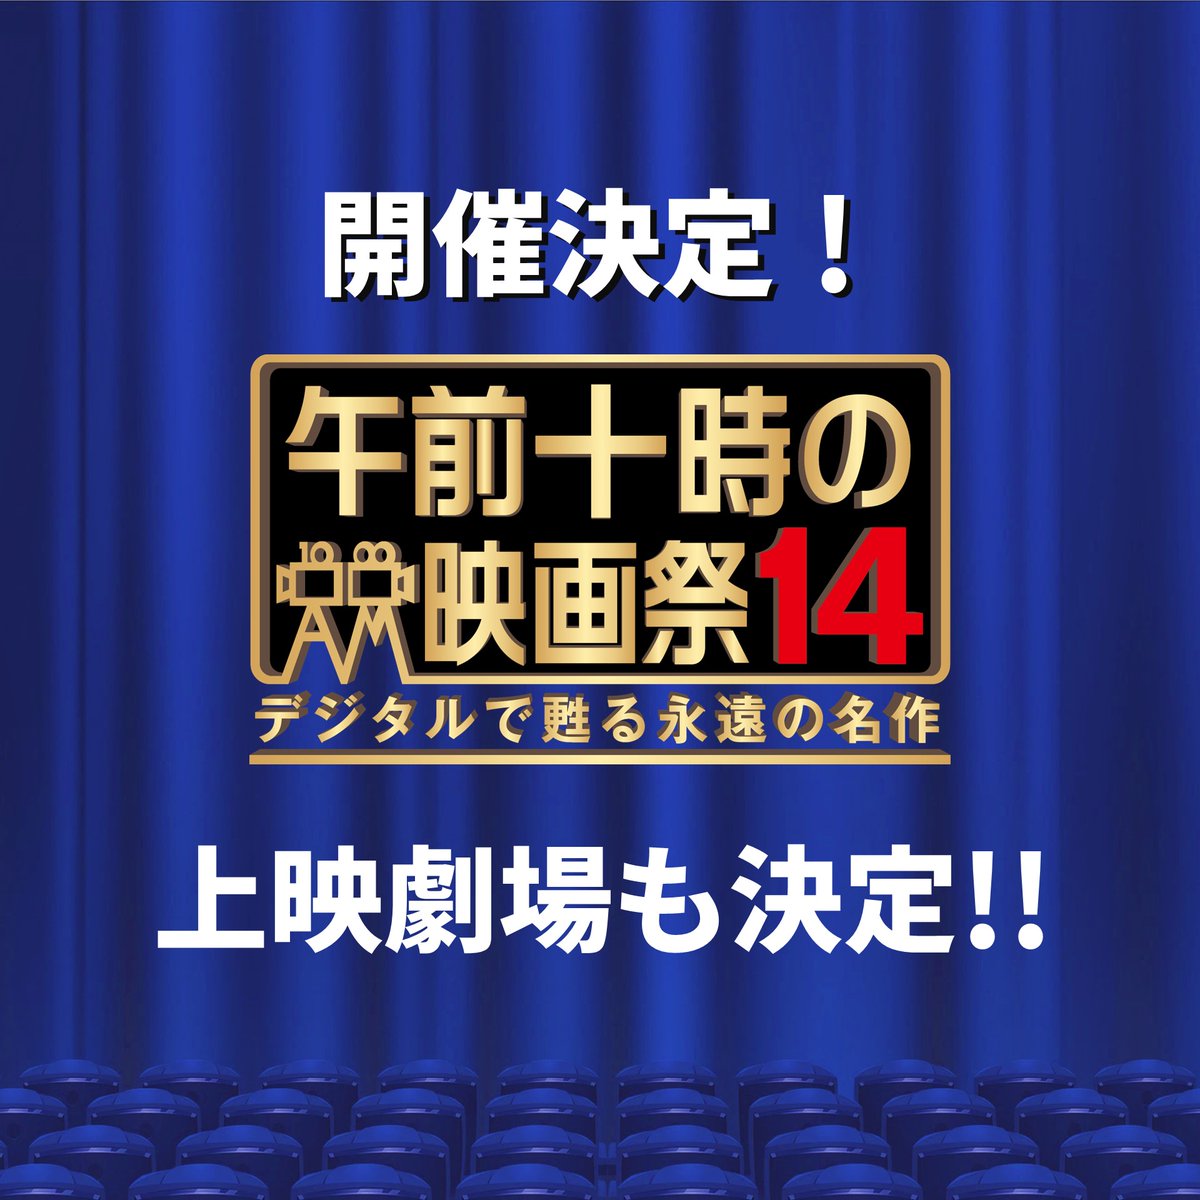 🎉祝🎊
「午前十時の映画祭14」開催決定！＆上映劇場も決定！！
news.asa10eiga.jp/550/
来期は例年になく劇場の入れ替わりが多いです。
劇場情報をぜひご確認ください。

上映ラインナップ発表はしばらくお待ちください～あれもこれもそれもどれもあって早く言いたいですが…🙊
#午前十時の映画祭